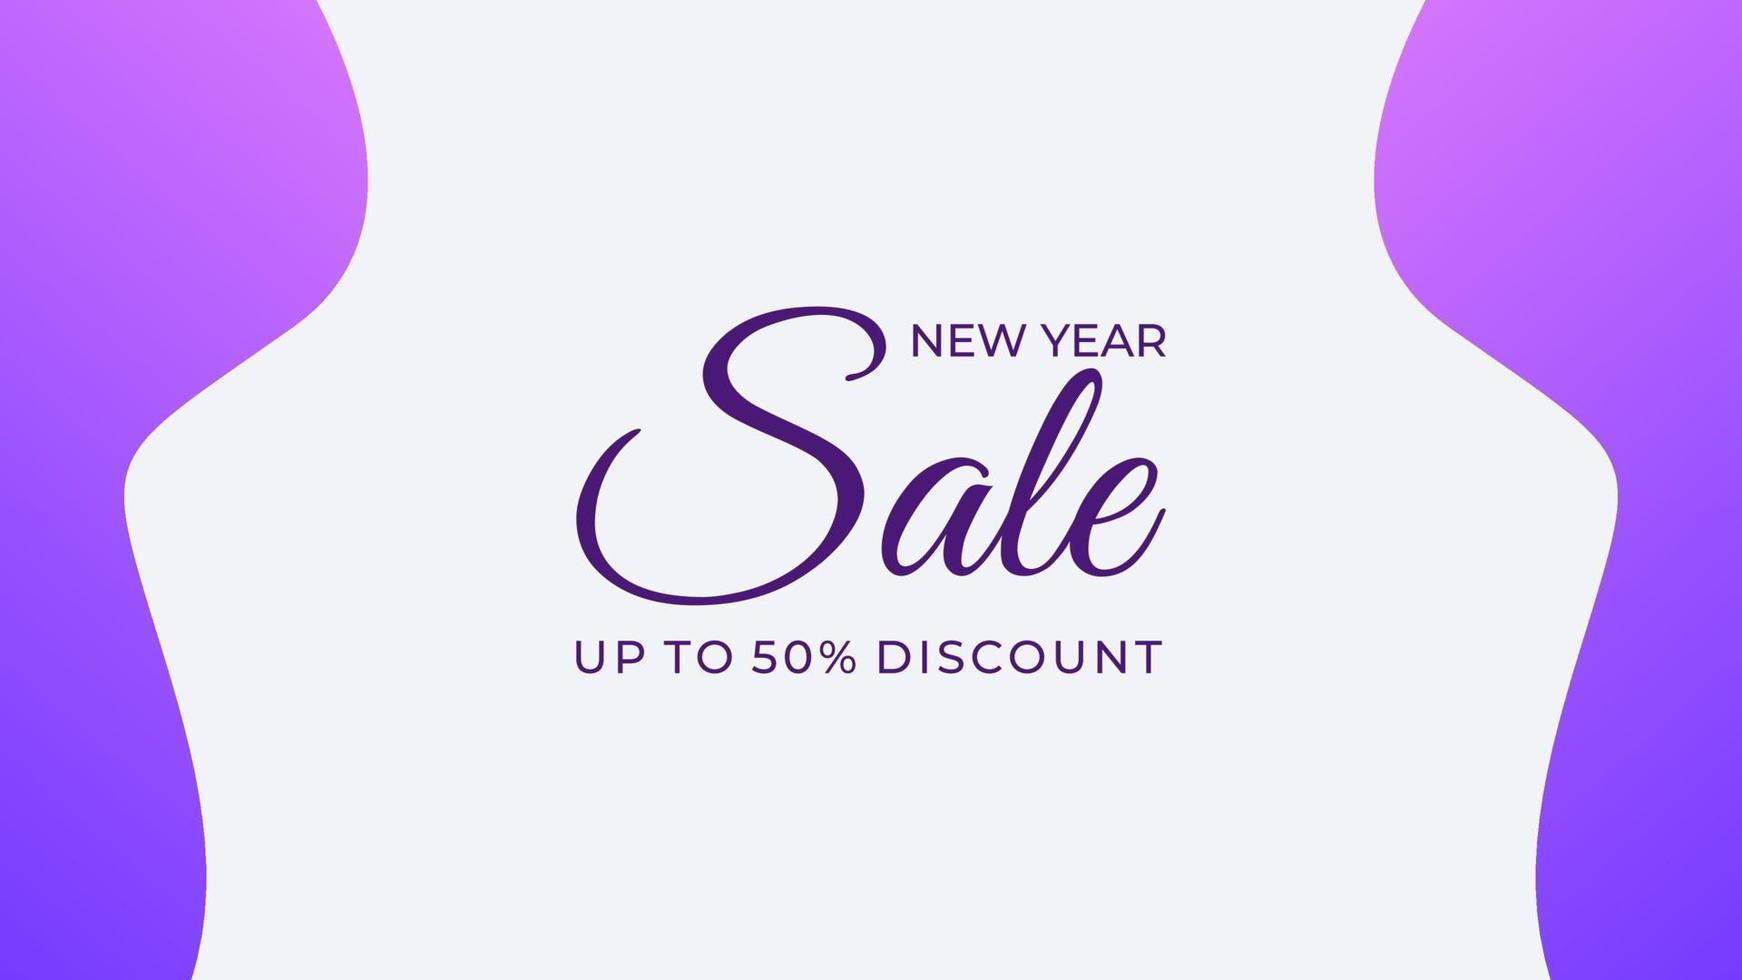 diseño de plantilla de banner de fondo de venta de año nuevo con vector libre de color púrpura